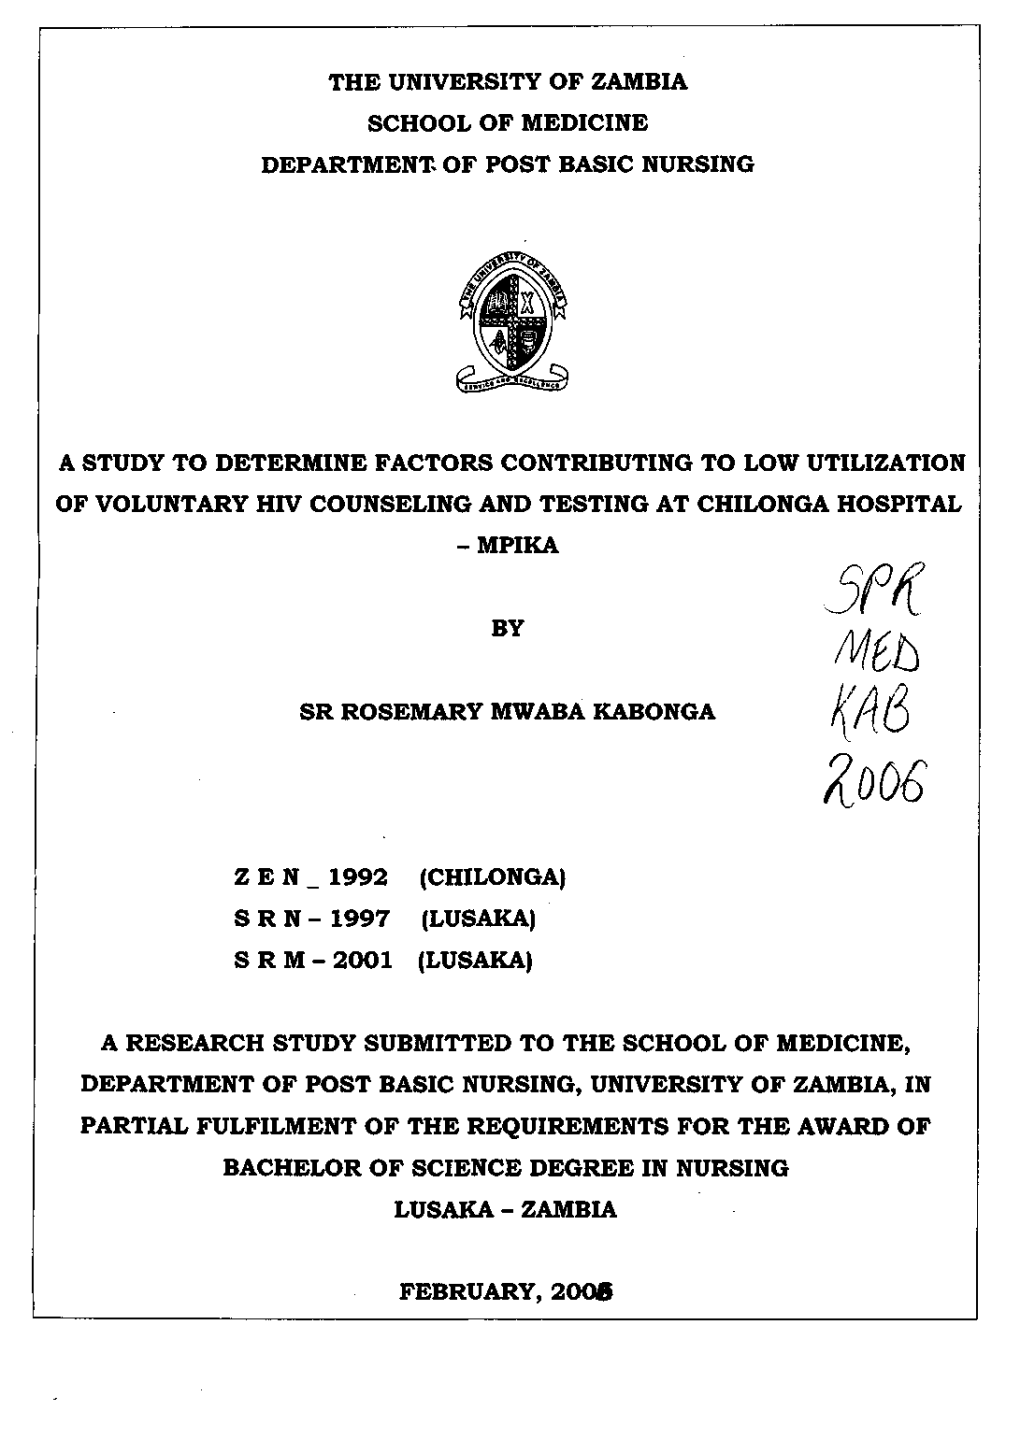 Kabongarosemary0001.PDF (2.338Mb)